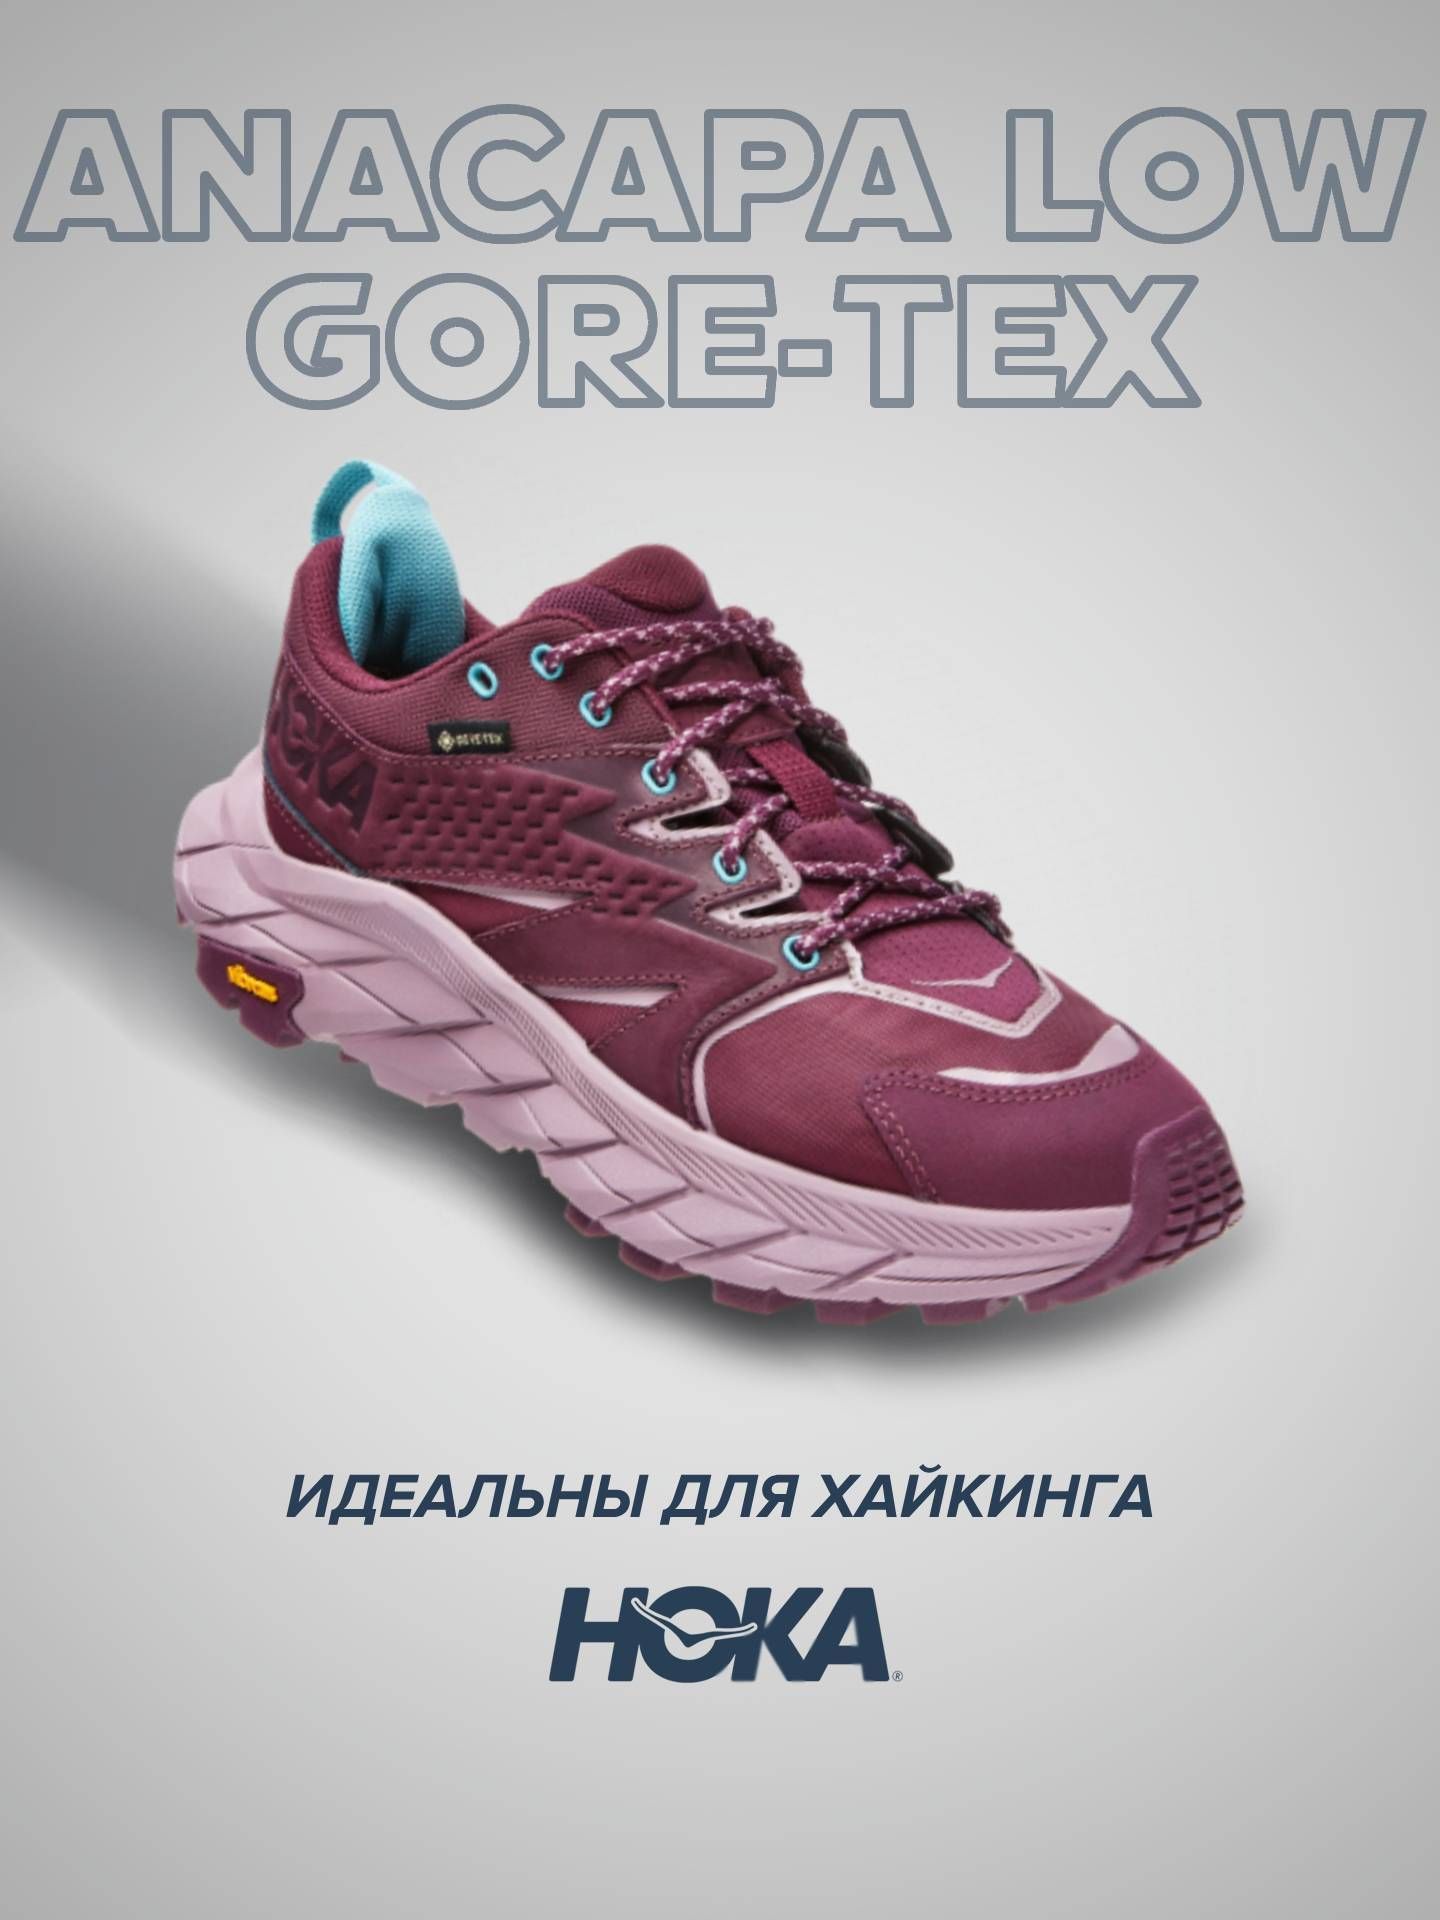 Кроссовки женские Hoka Anacapa Low Goretex фиолетовые 8.5 US